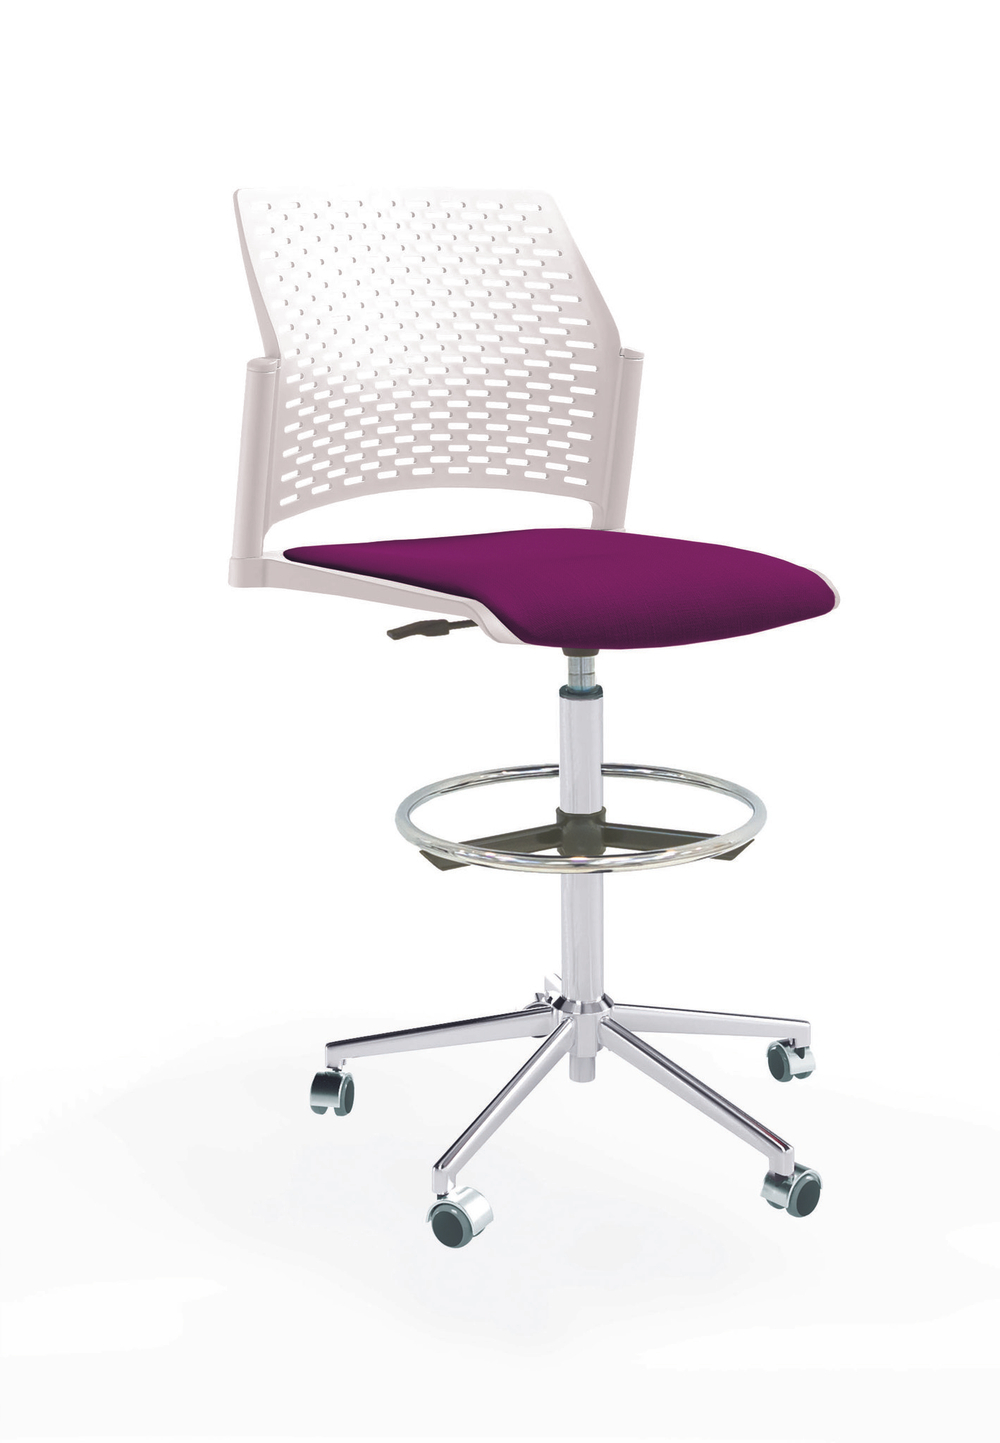 Кресло Rewind каркас хром, пластик белый, база стальная хромированная, без подлокотников, сиденье фиолетовое